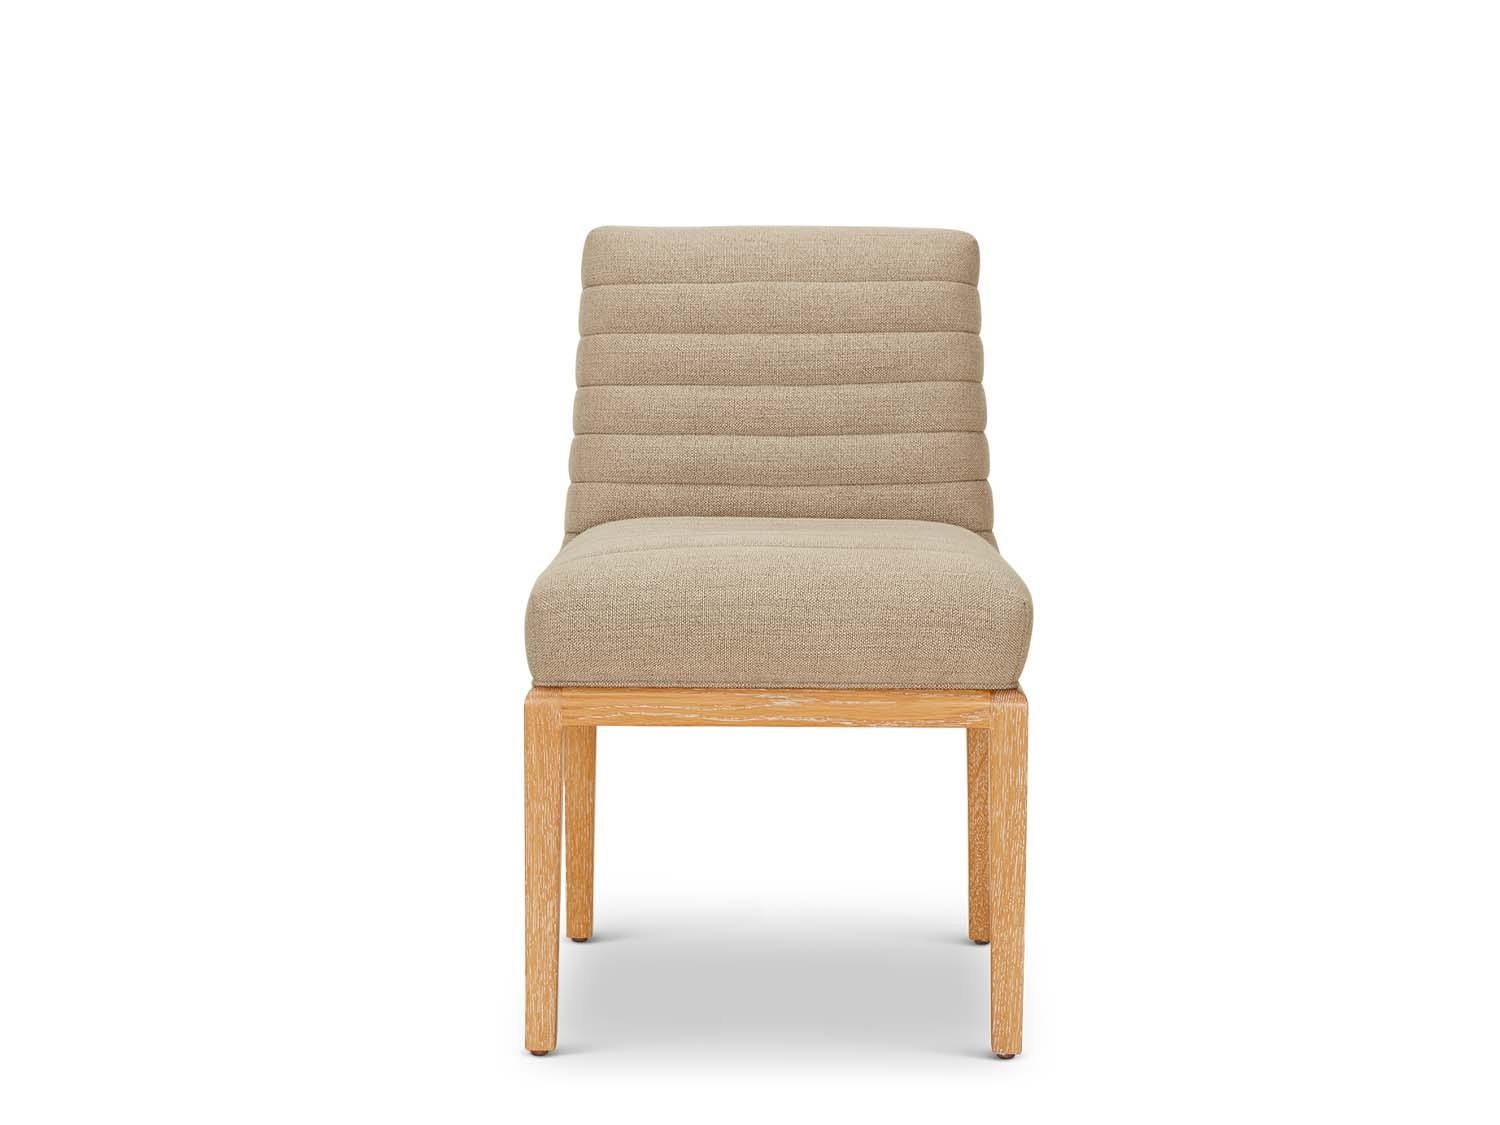 Der Shoreland-Stuhl ist Teil der Collaboration-Kollektion mit dem Innenarchitekten Brian Paquette. Der Esszimmerstuhl hat eine getuftete Rückenlehne und Sitzfläche und ein Gestell aus massivem amerikanischem Nussbaum oder Weißeiche. Dieses Stück ist